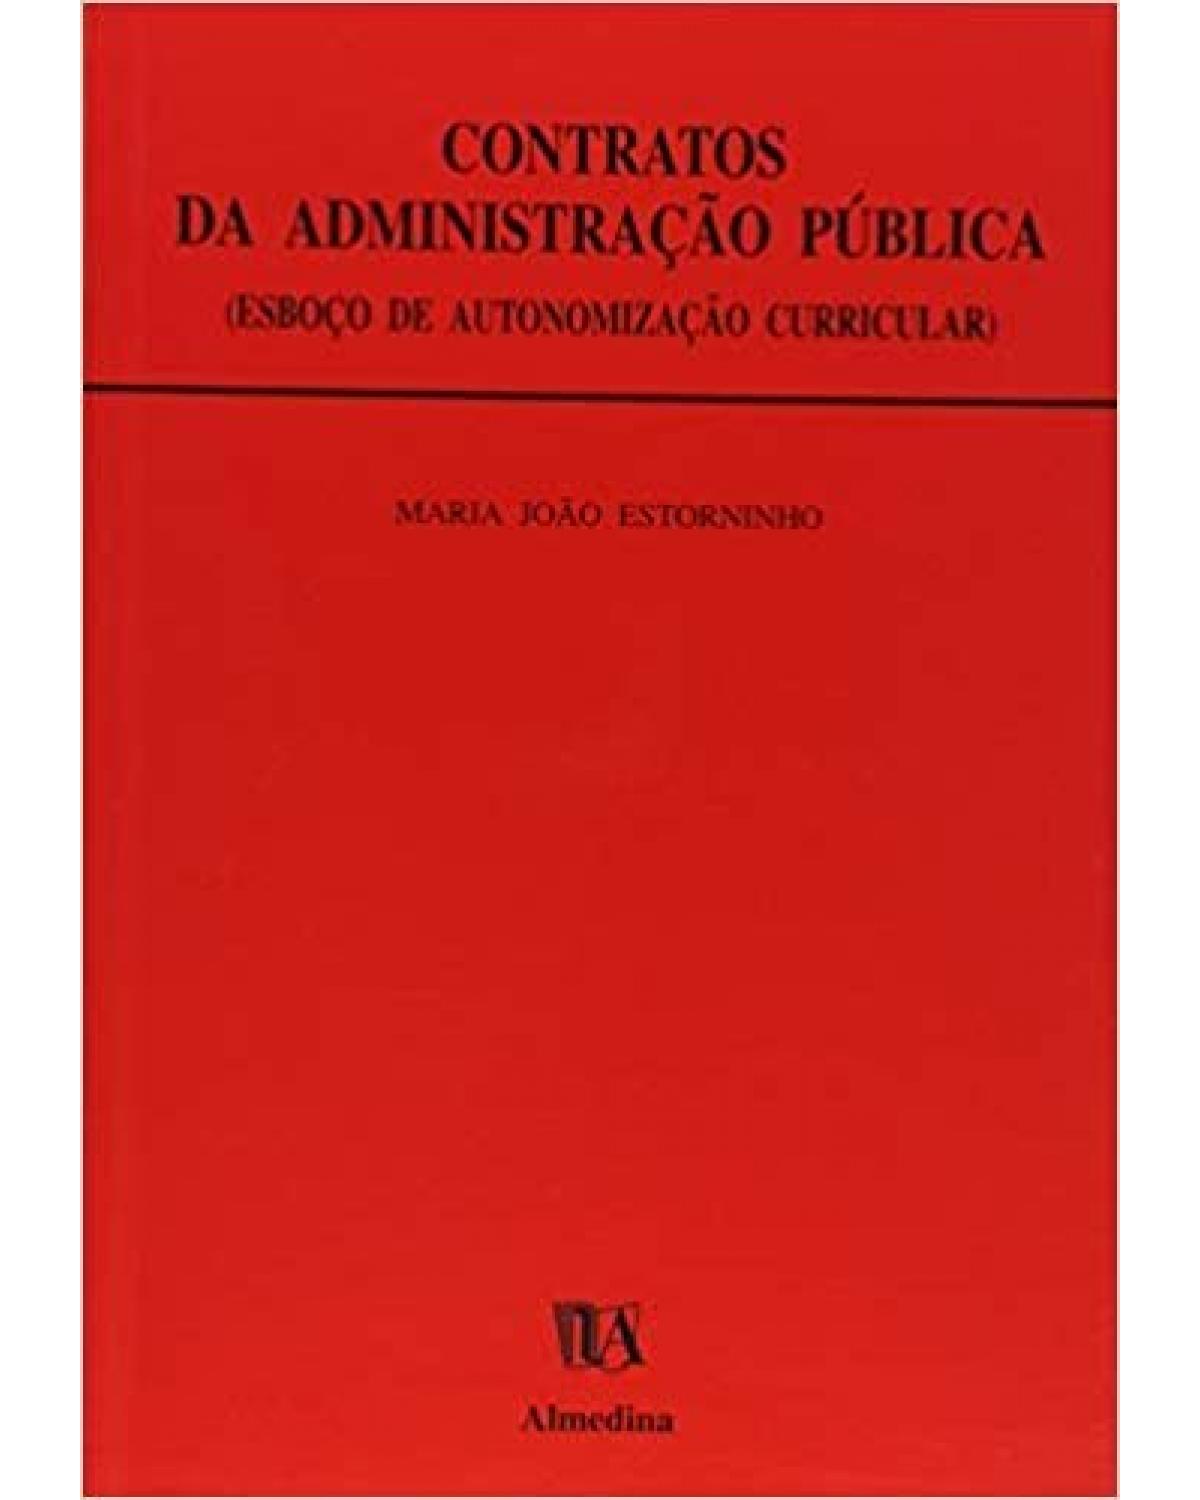 Contratos da administração pública - esboço de autonomização curricular - 1ª Edição | 1999